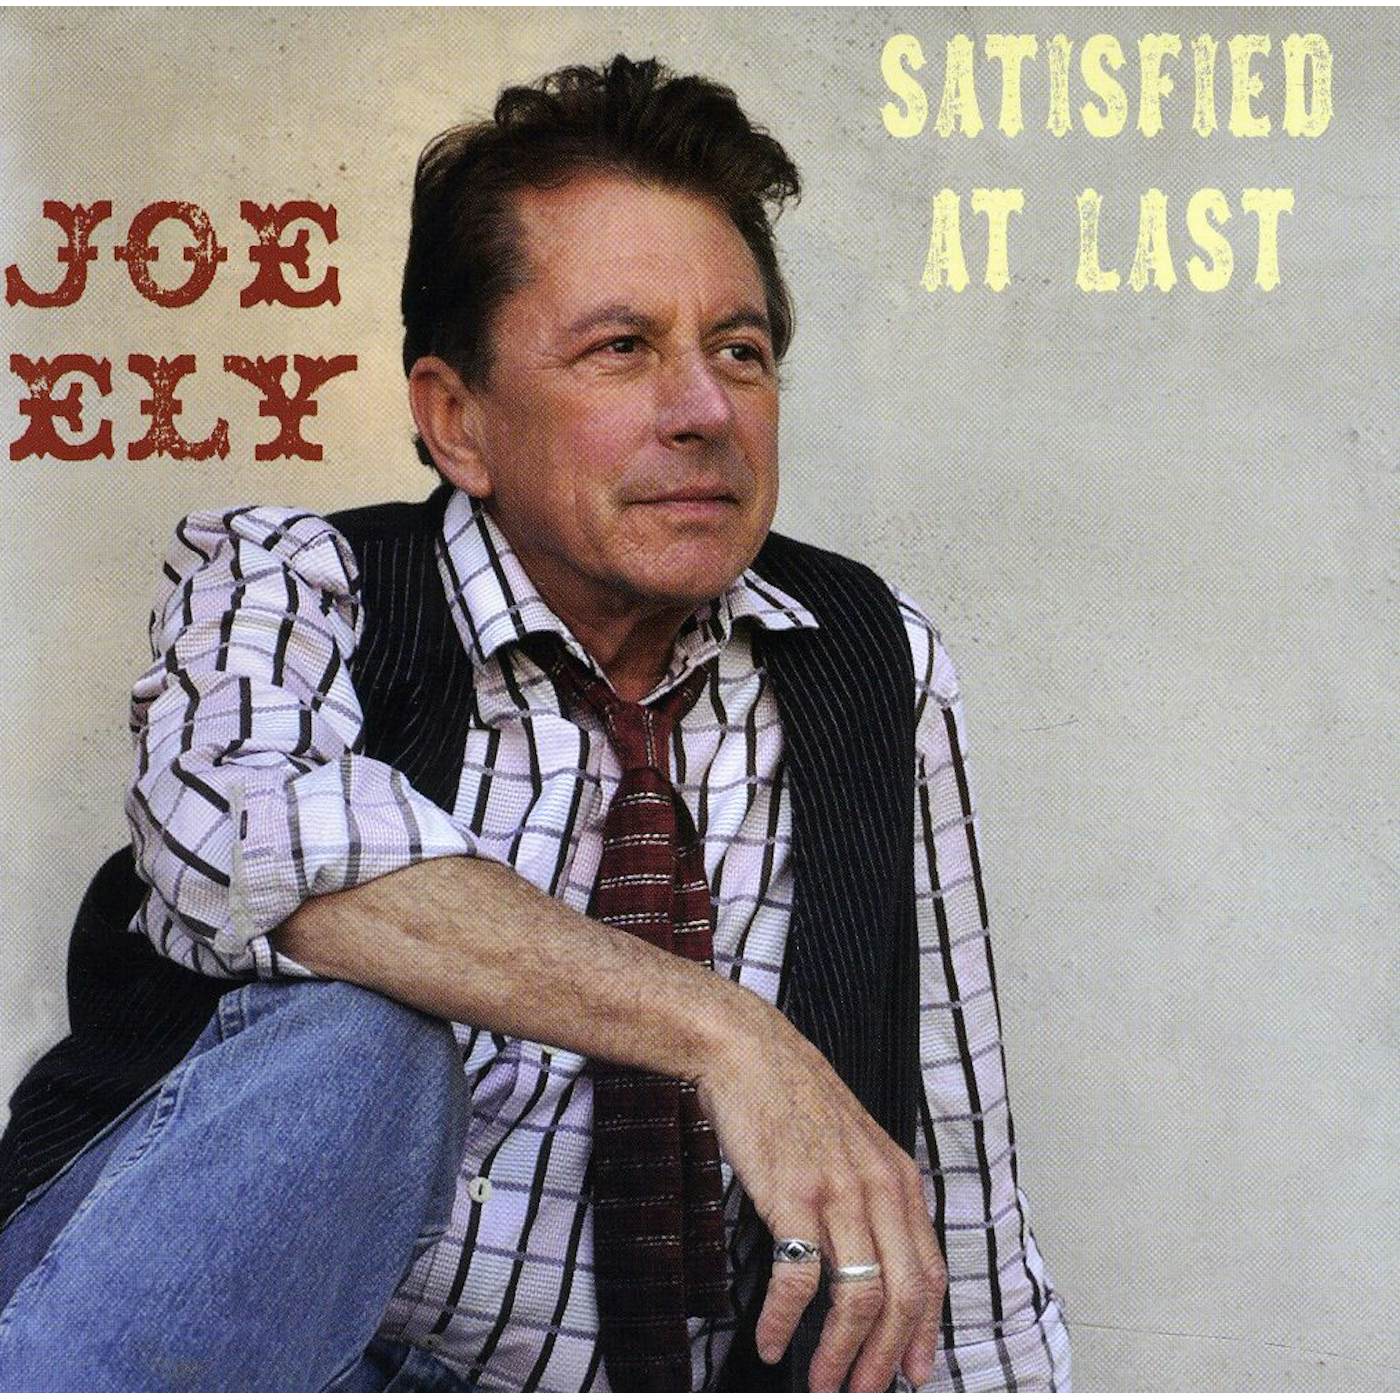 Joe Ely SATISFIED AT LAST CD